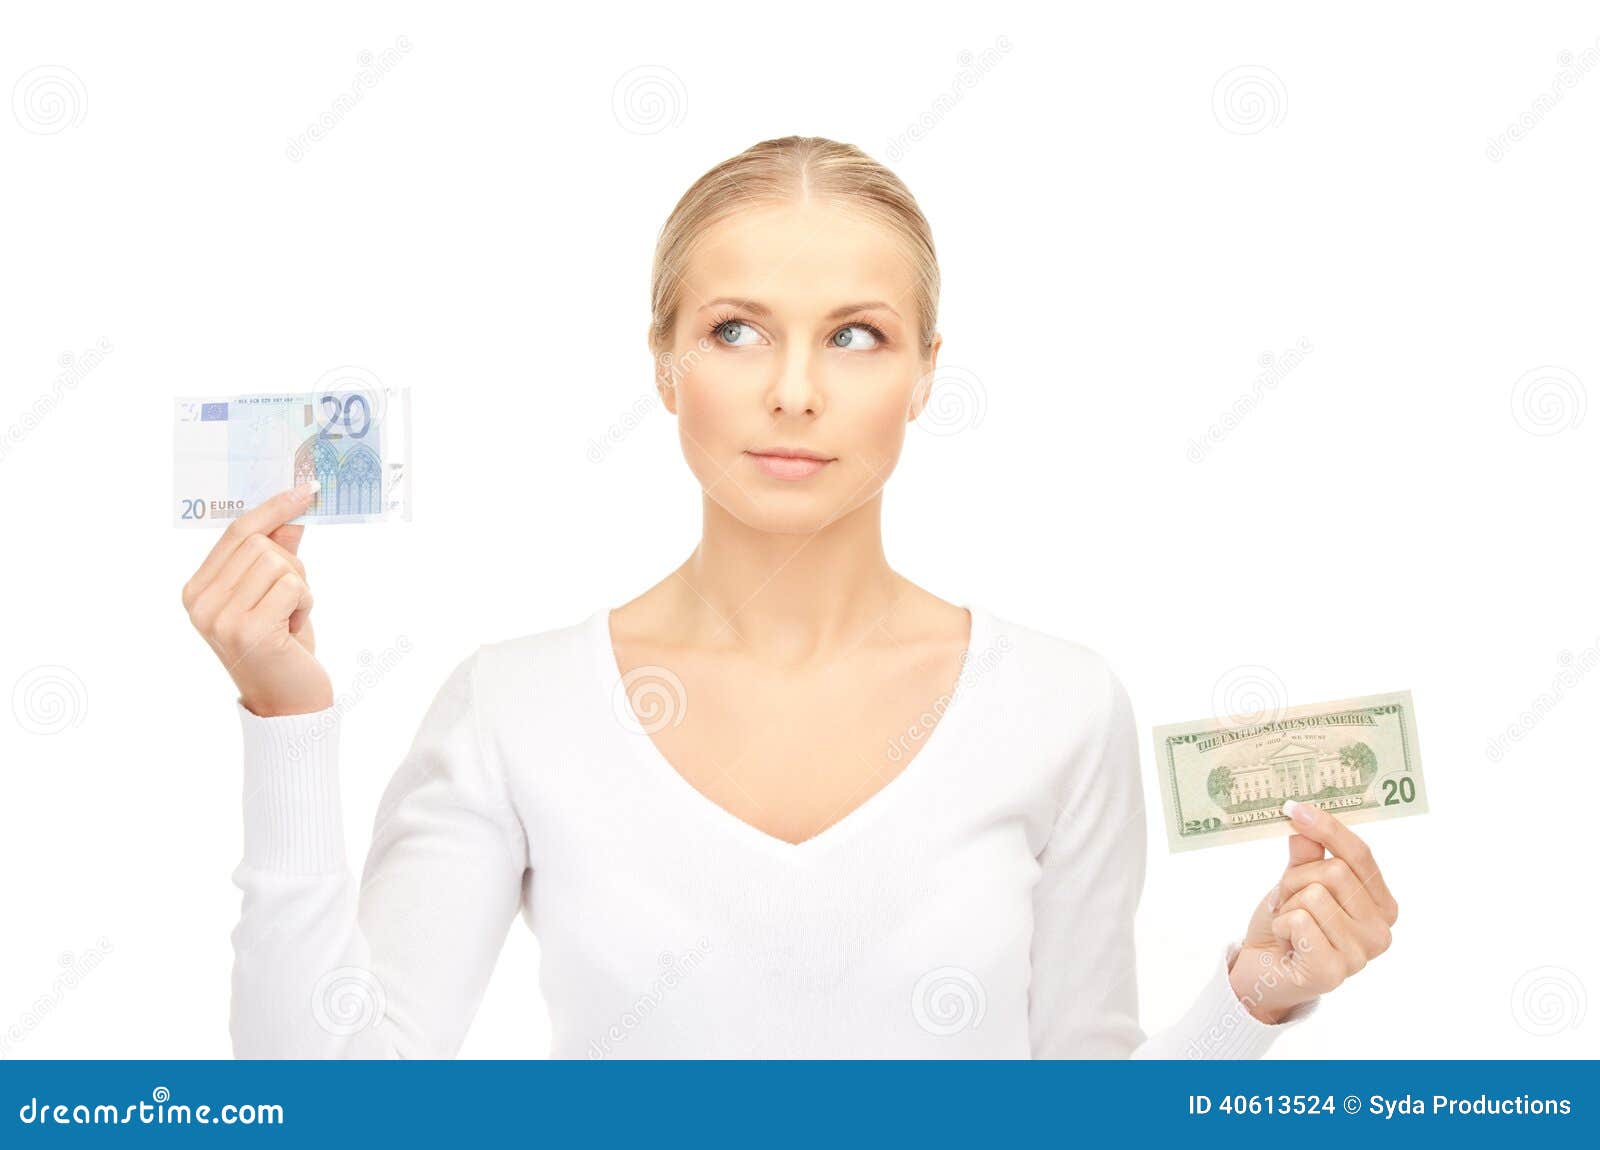 Immagine della donna con le note dei soldi del dollaro e dell'euro